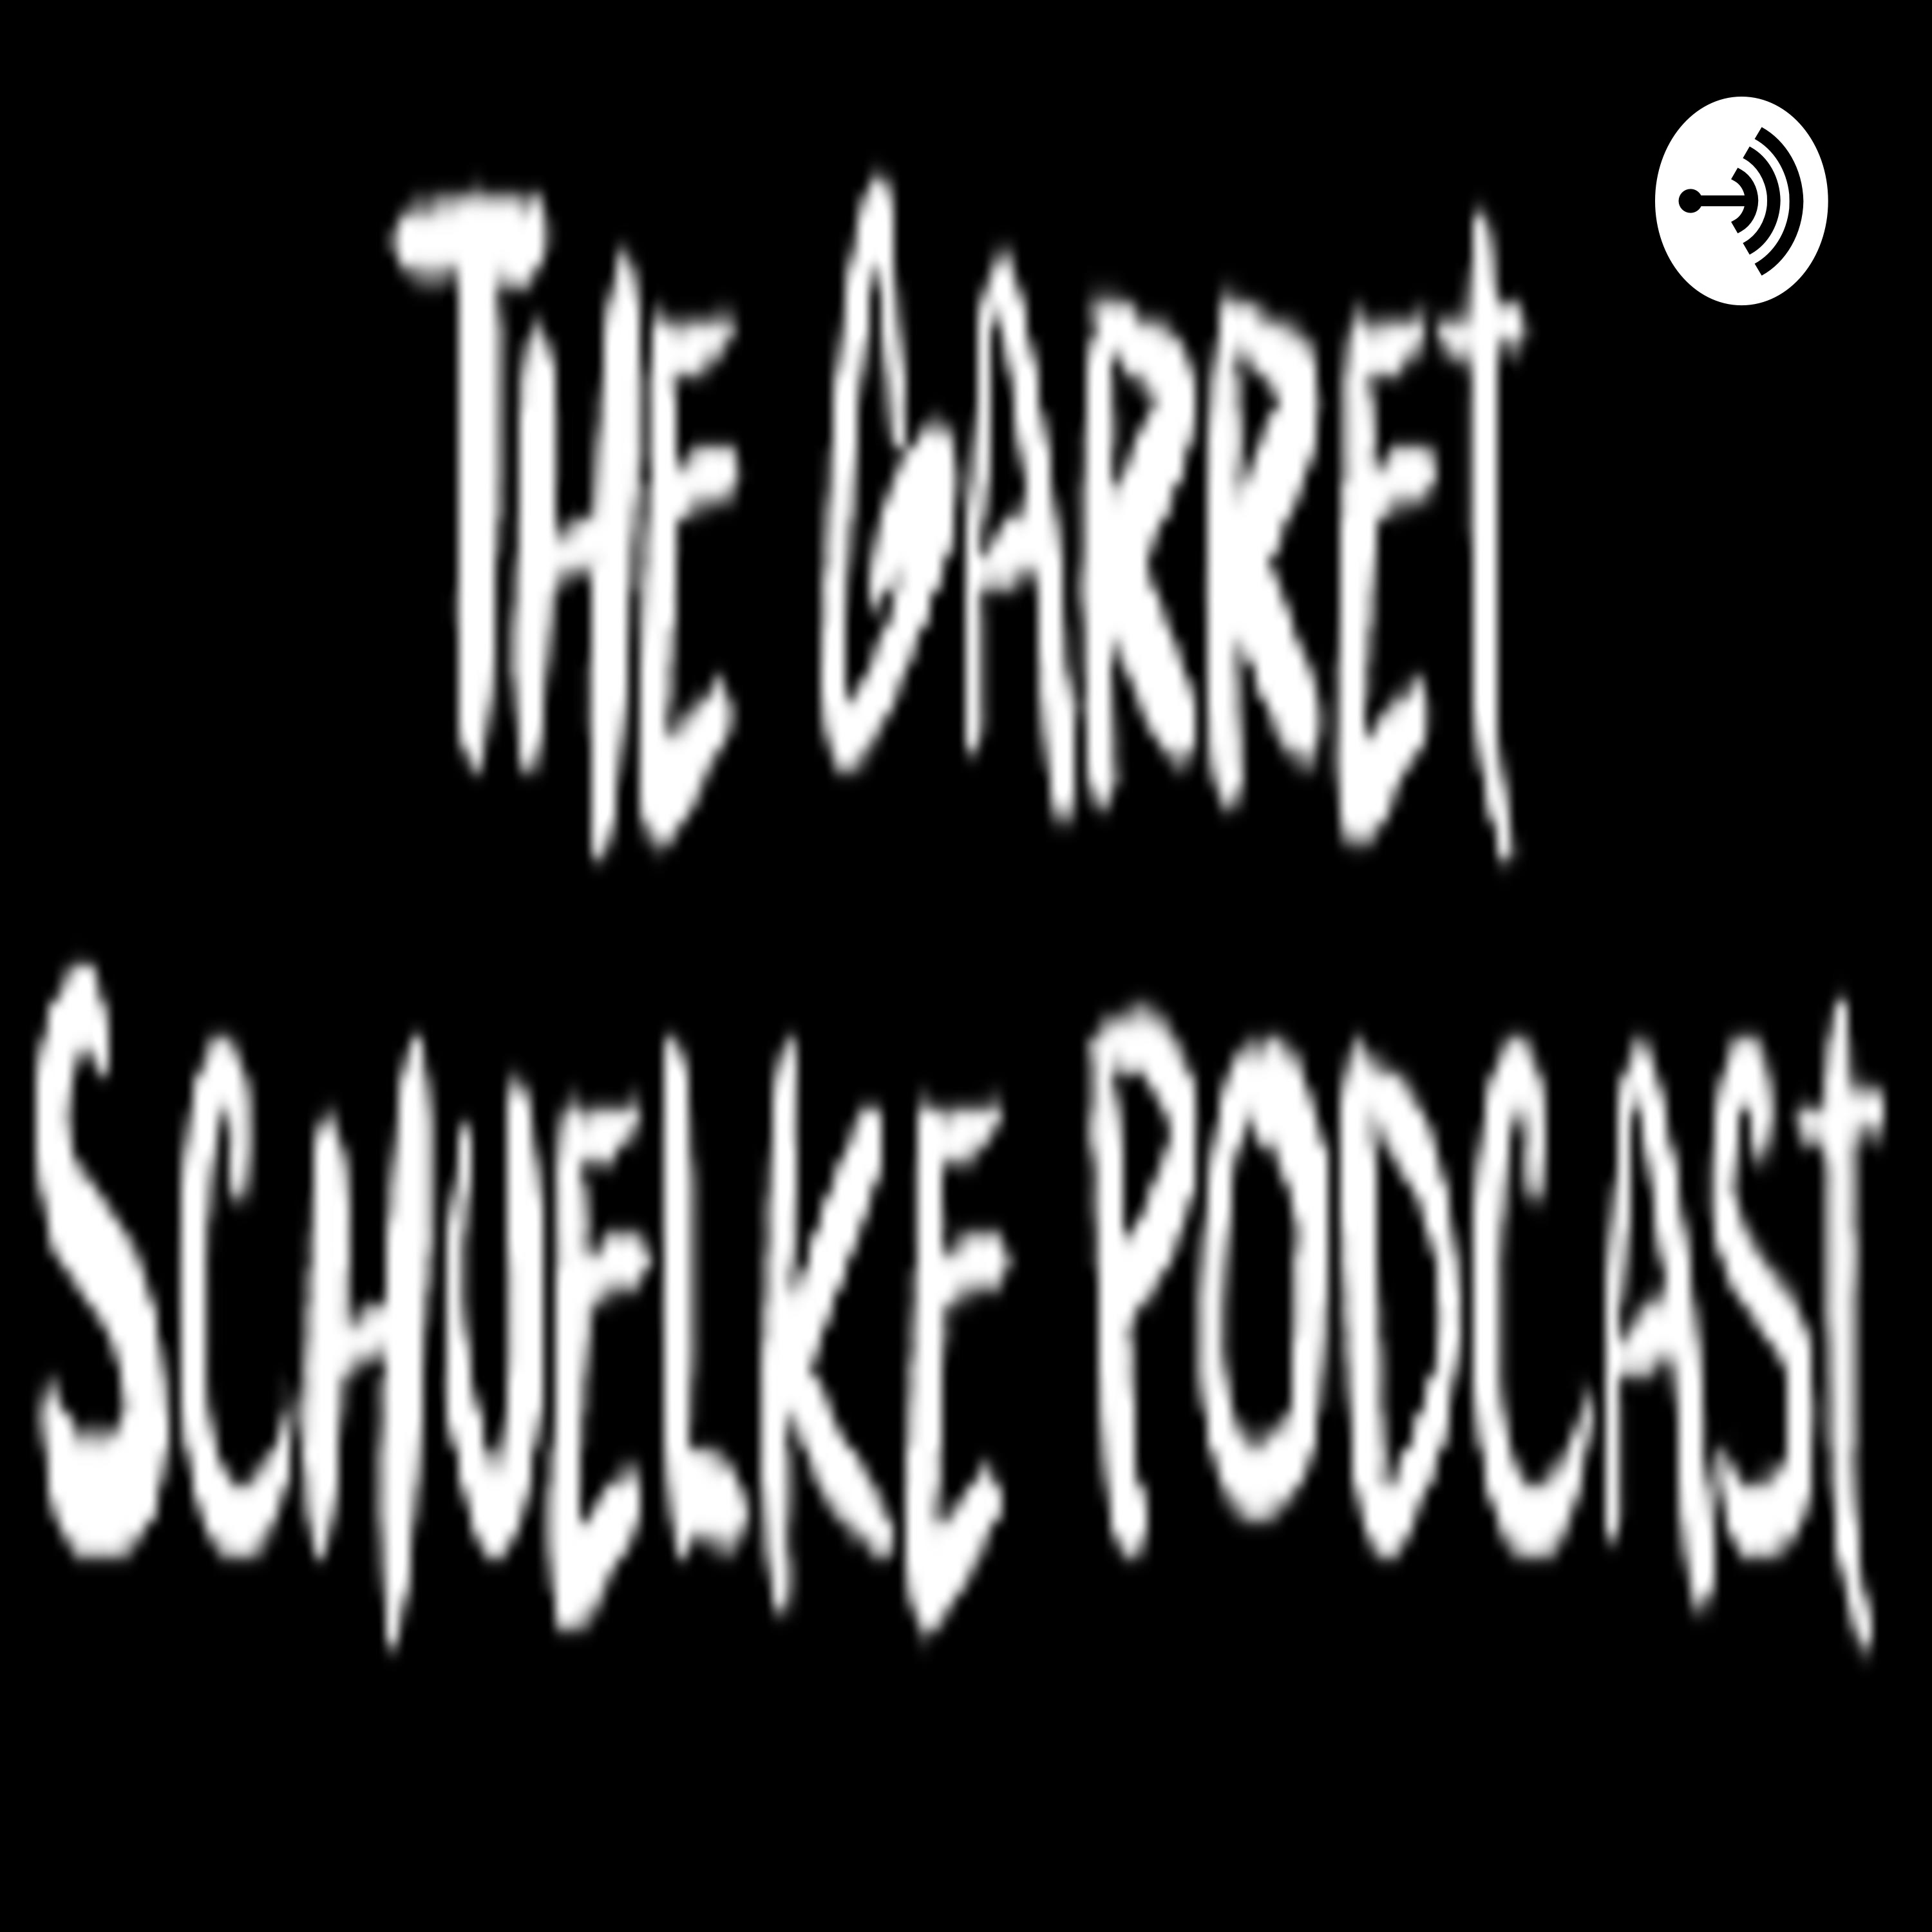 The Garret Schuelke Podcast Episode 39: Comedic Gridiron with Adam Degi